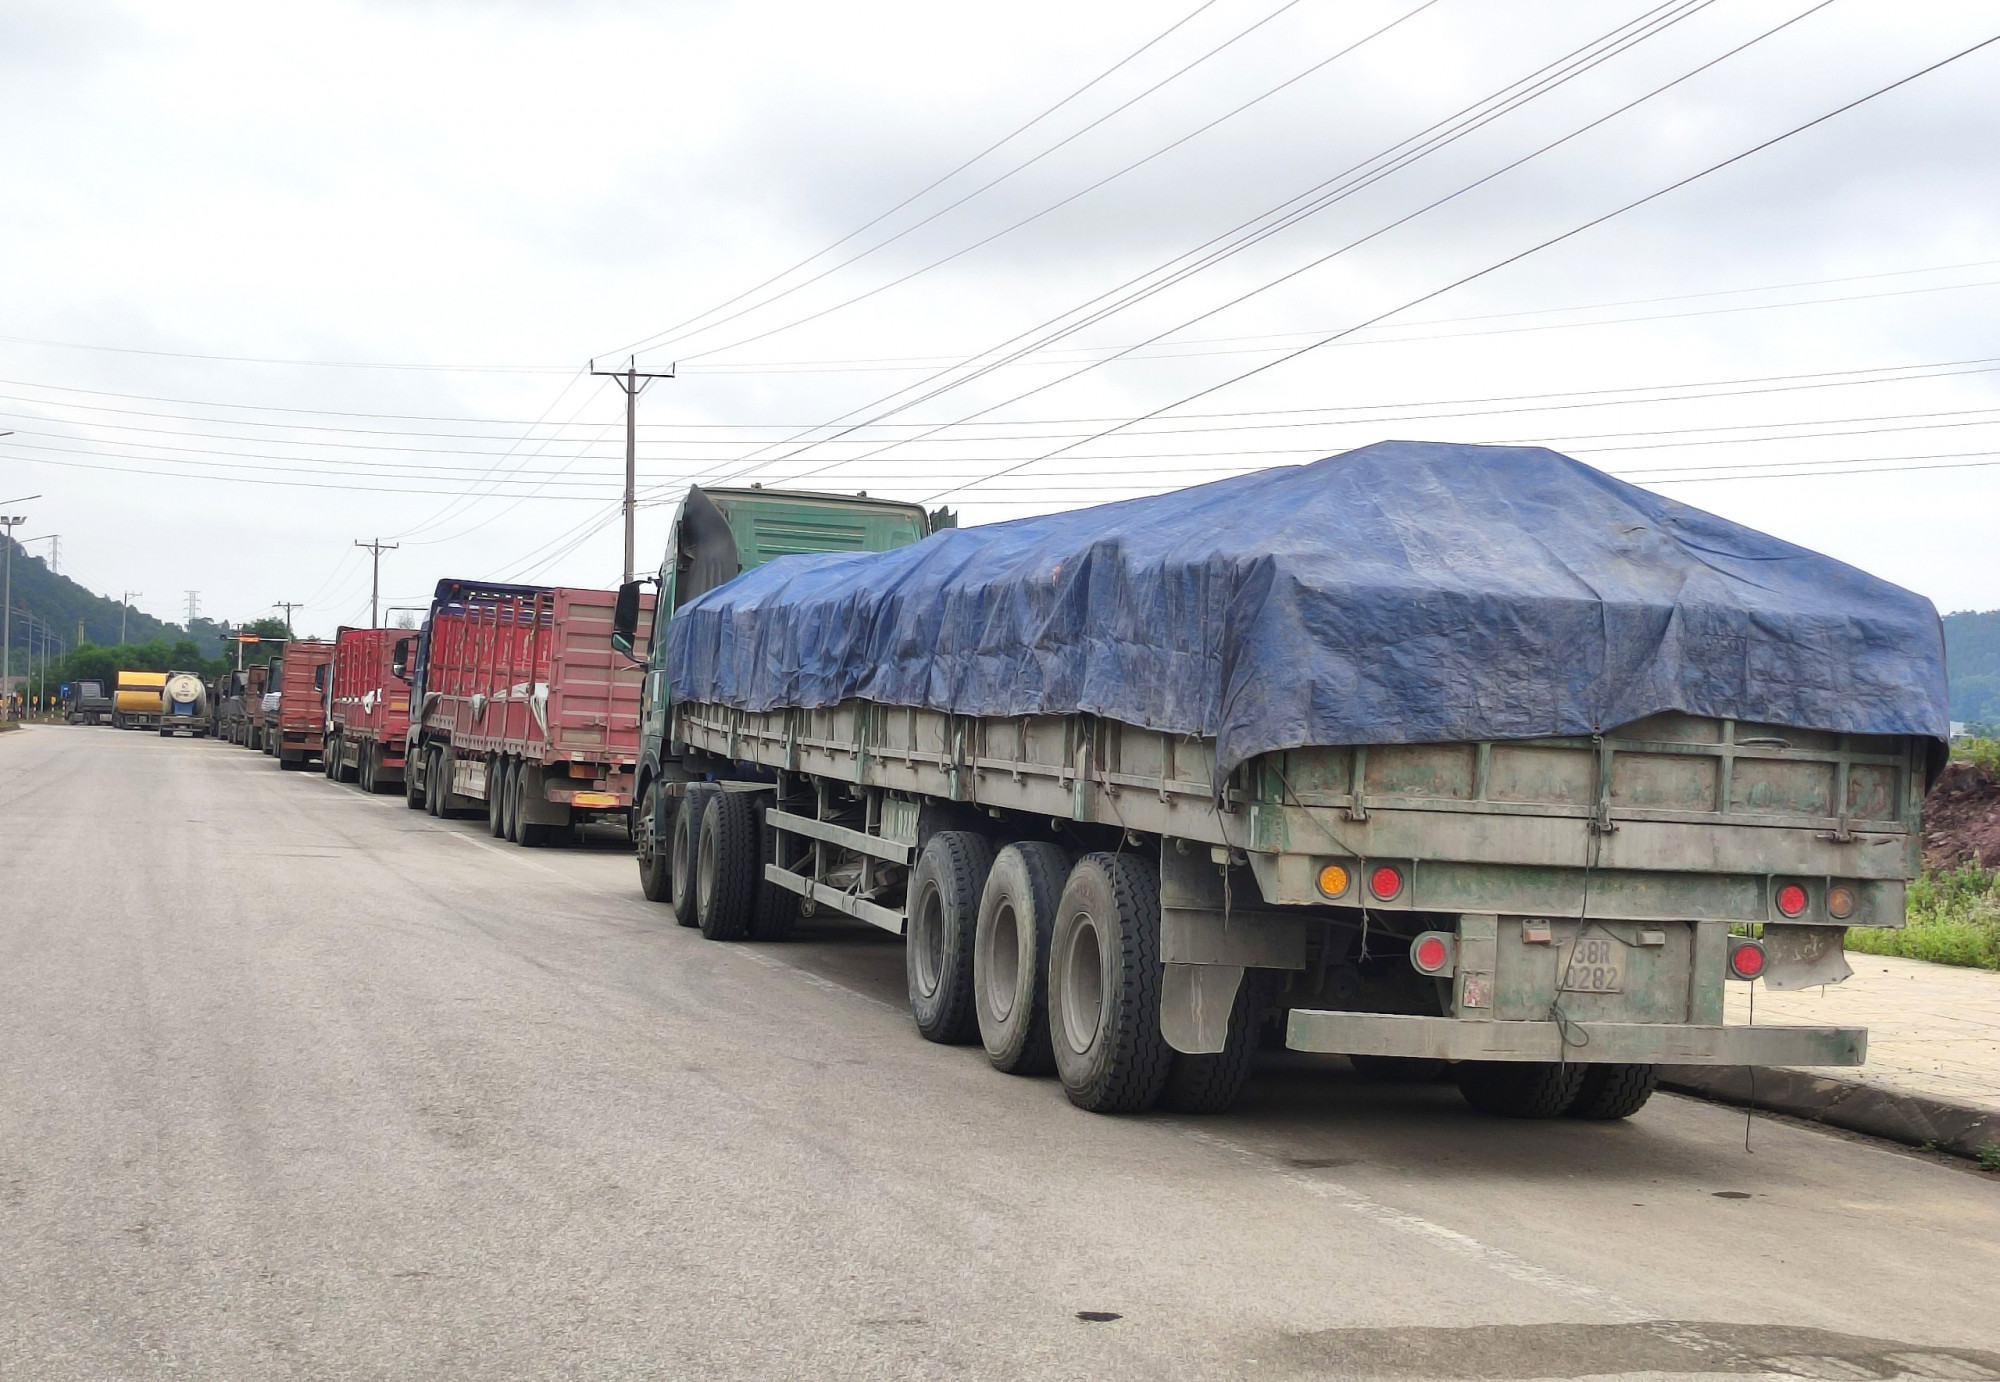 Vụ việc kéo dài trong 2 ngày khiến nhiều xe tải chở xi măng phải xếp hàng dài trên đường - Ảnh: Khánh Trung